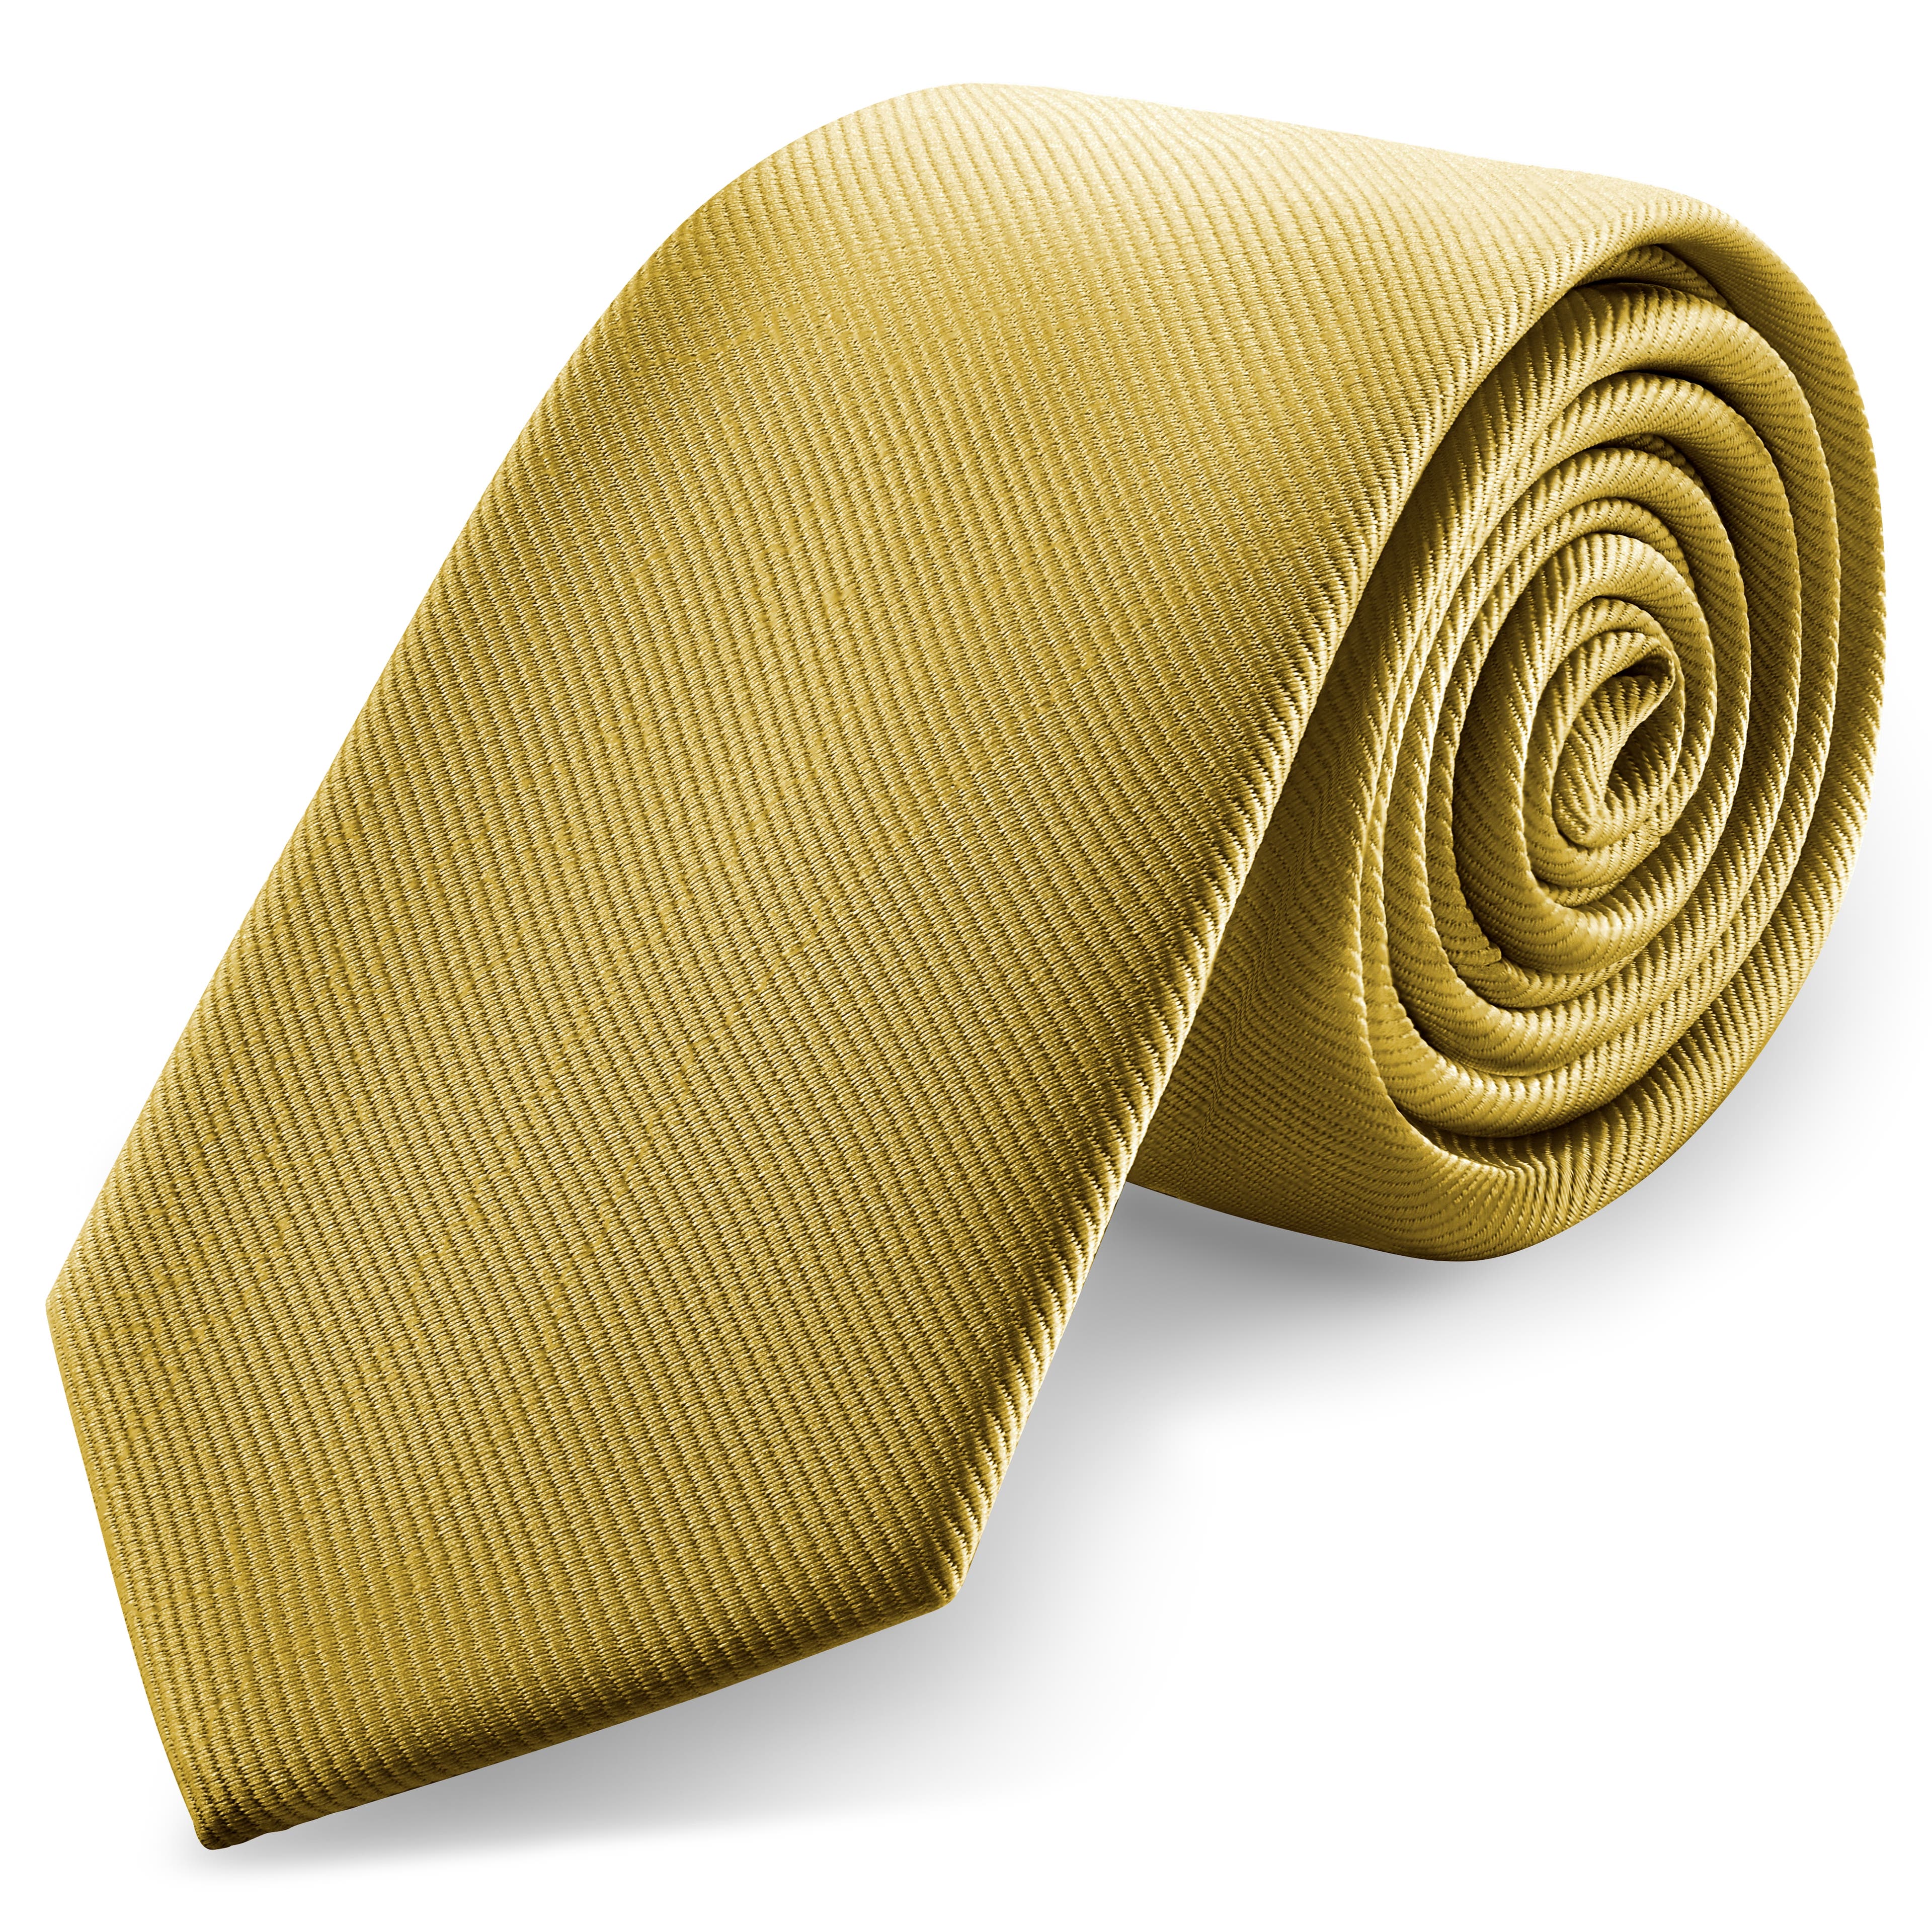 3 1/8" (8 cm) Mustard Yellow Grosgrain Tie